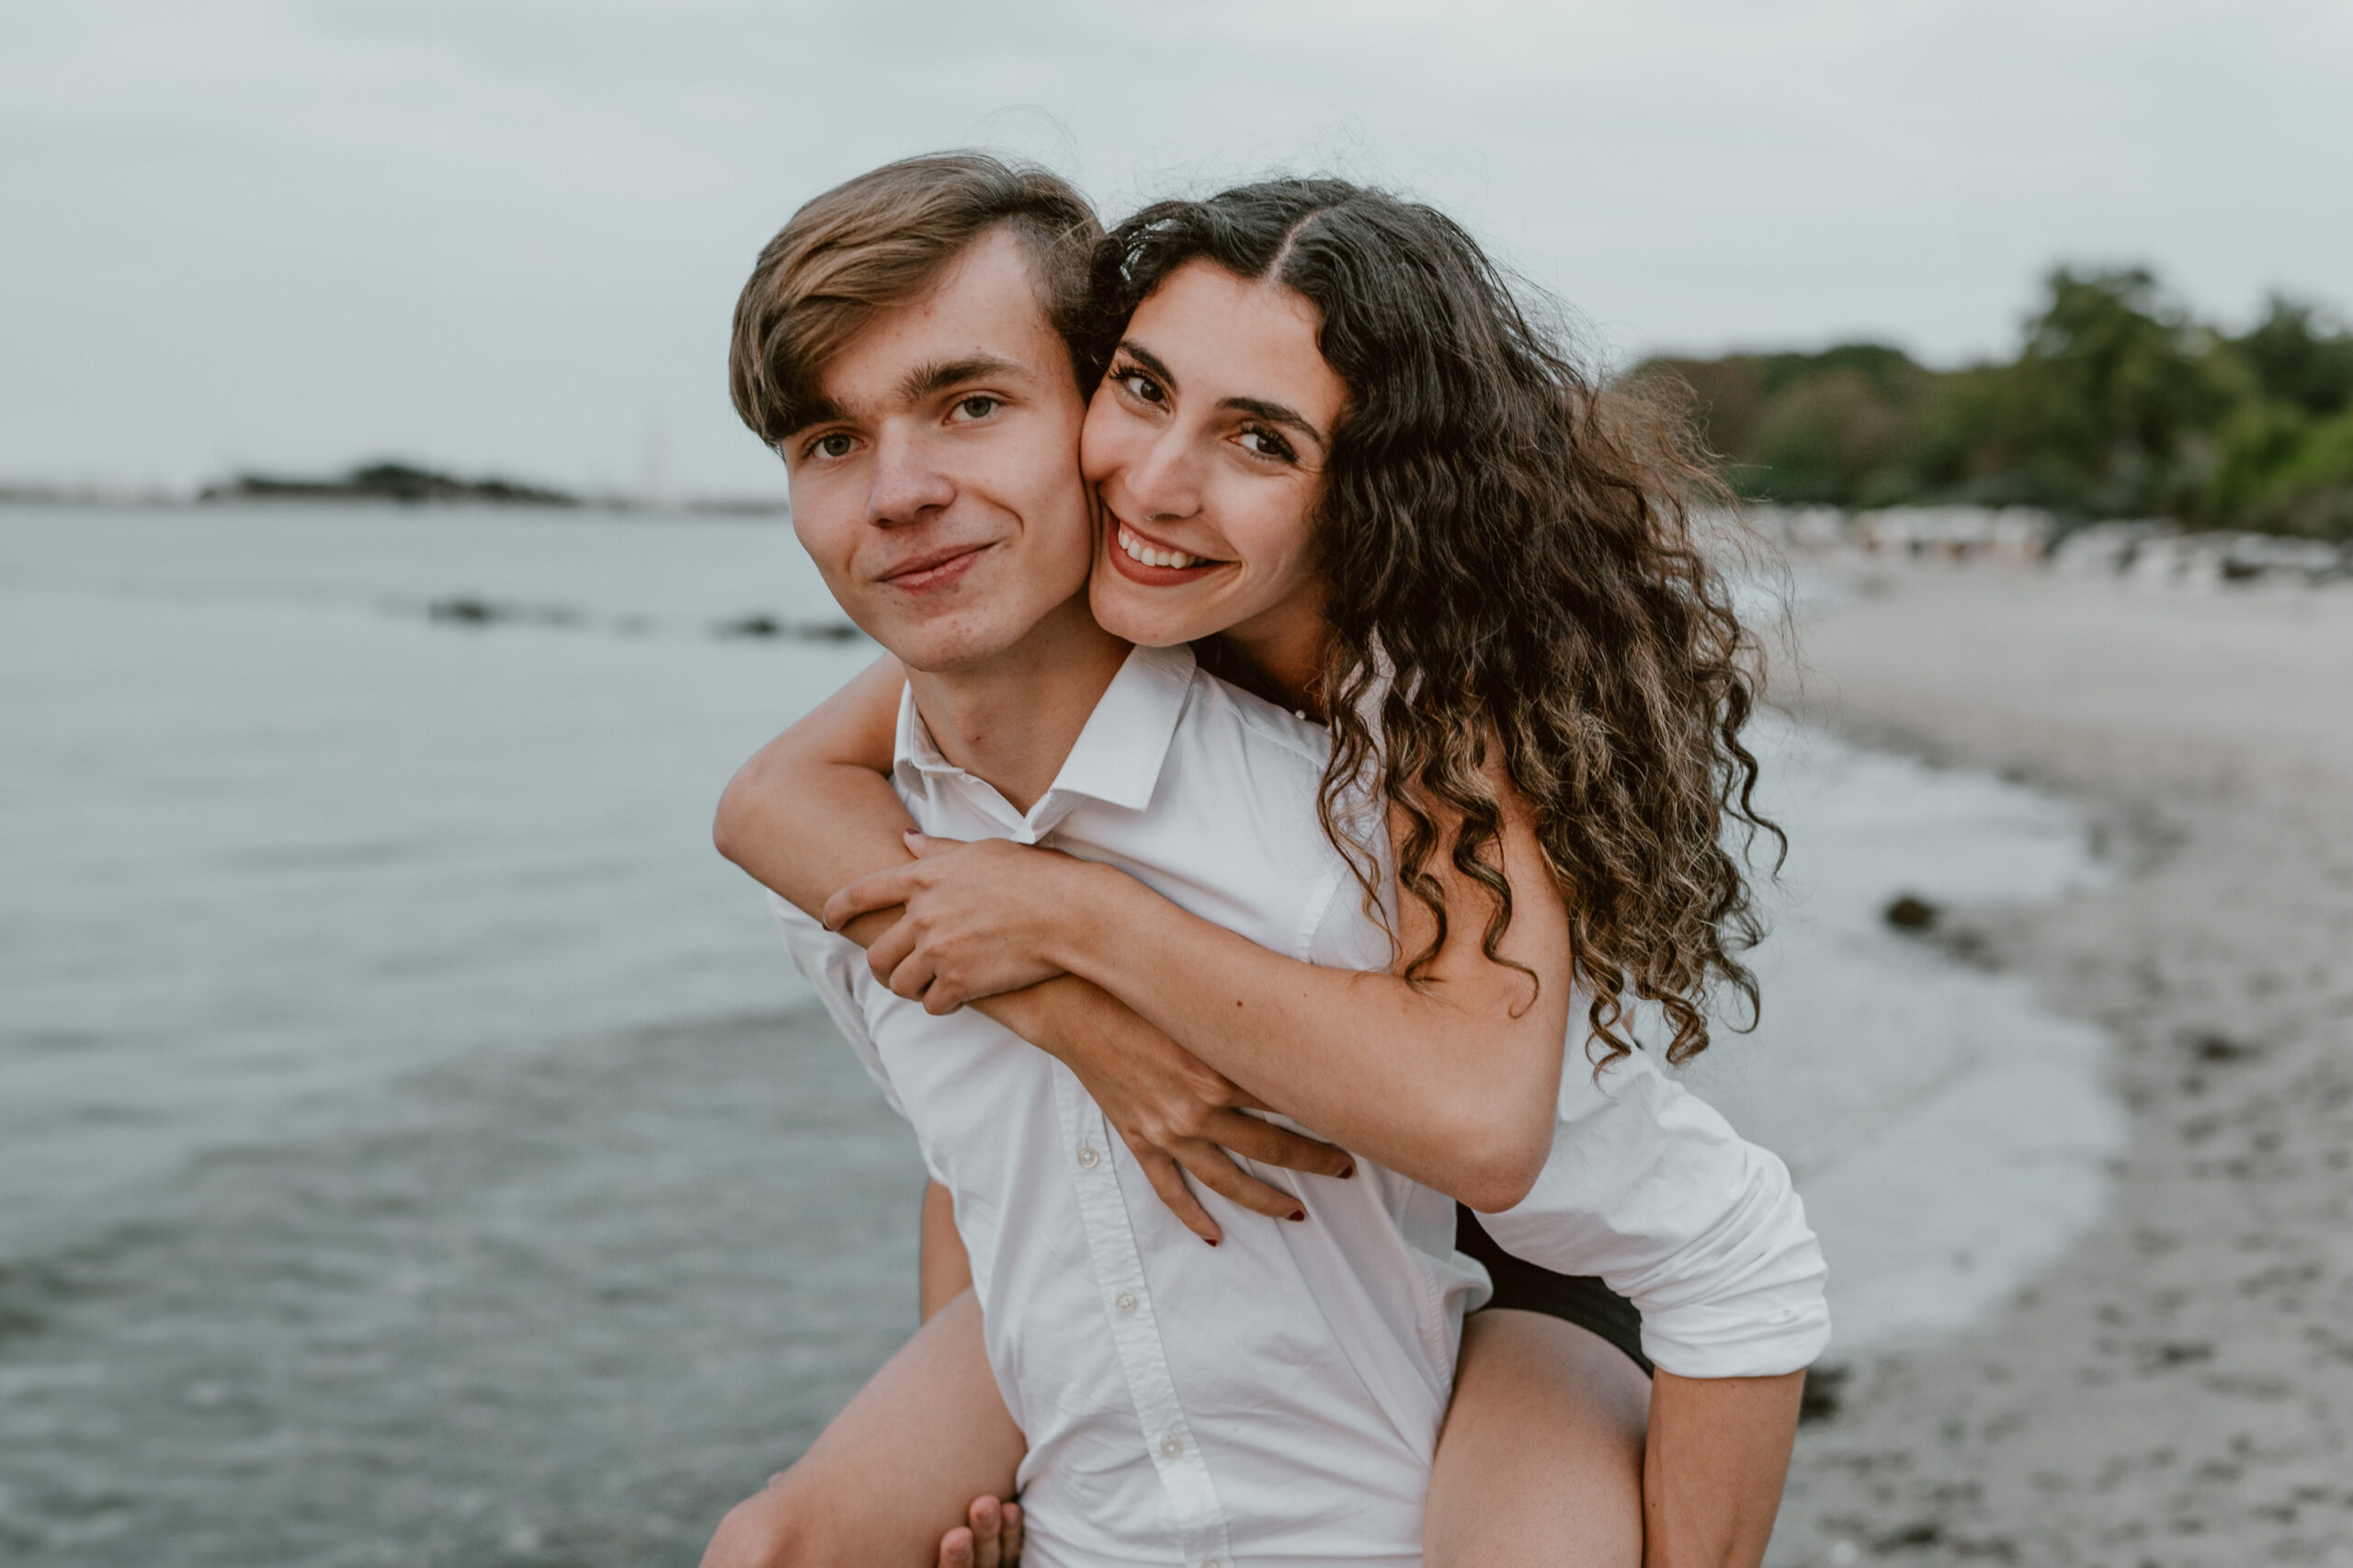 Paarfotografie: Ein Paar umarmt sich liebevoll und schaut sich dabei vertraut am Timmendorfer Strand an.